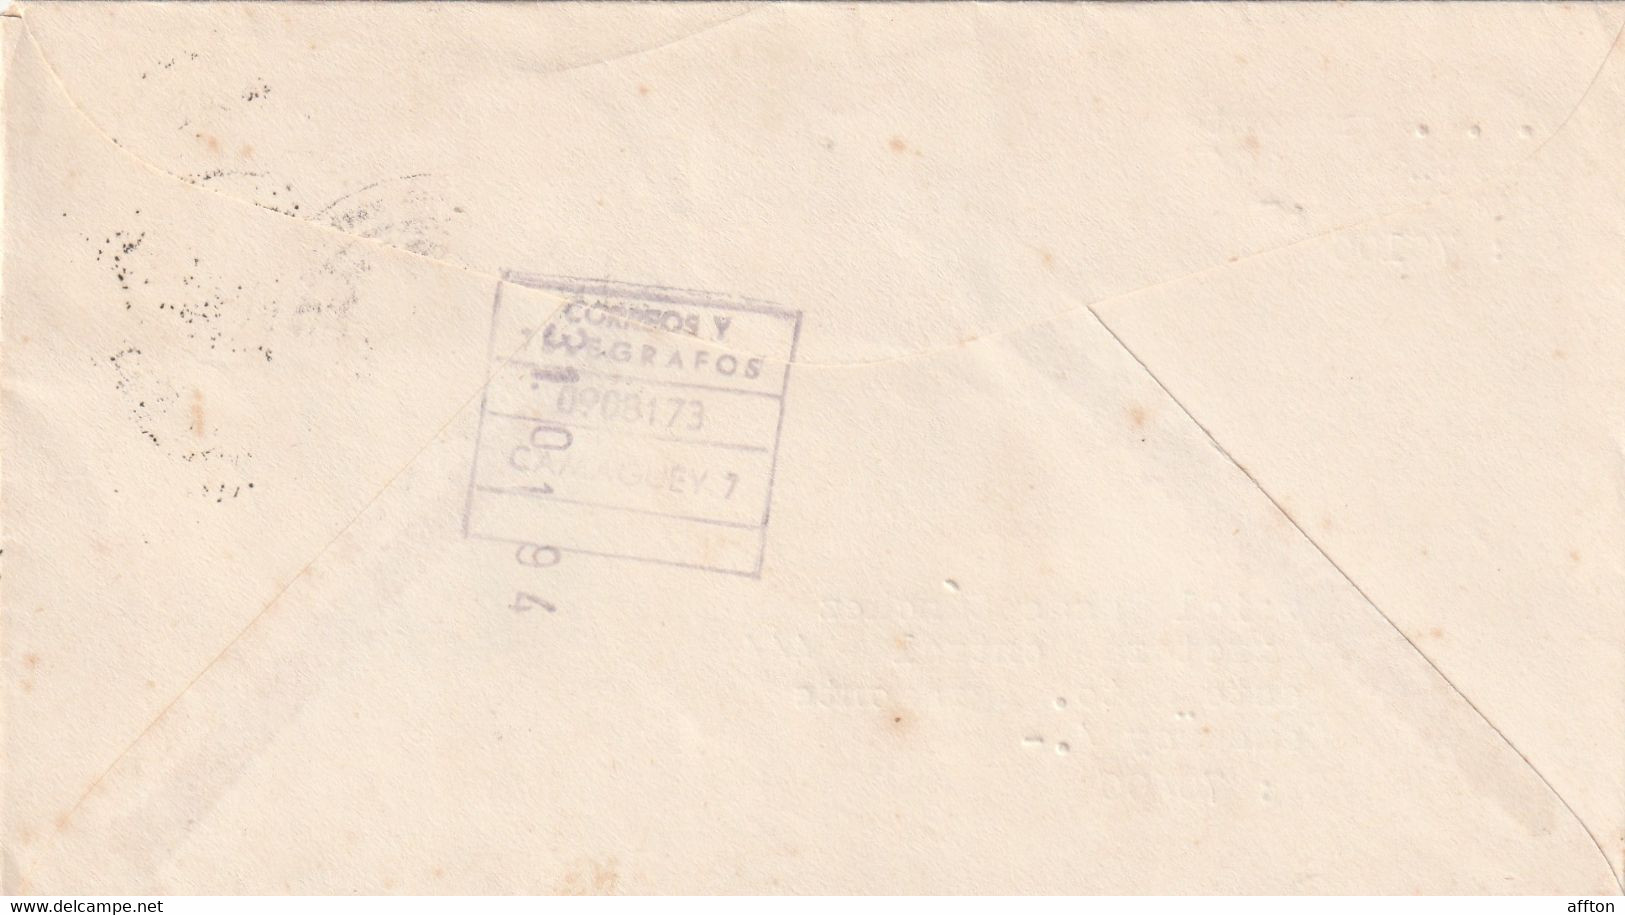 Camaguey Cuba 1994 Cover Mailed - Briefe U. Dokumente